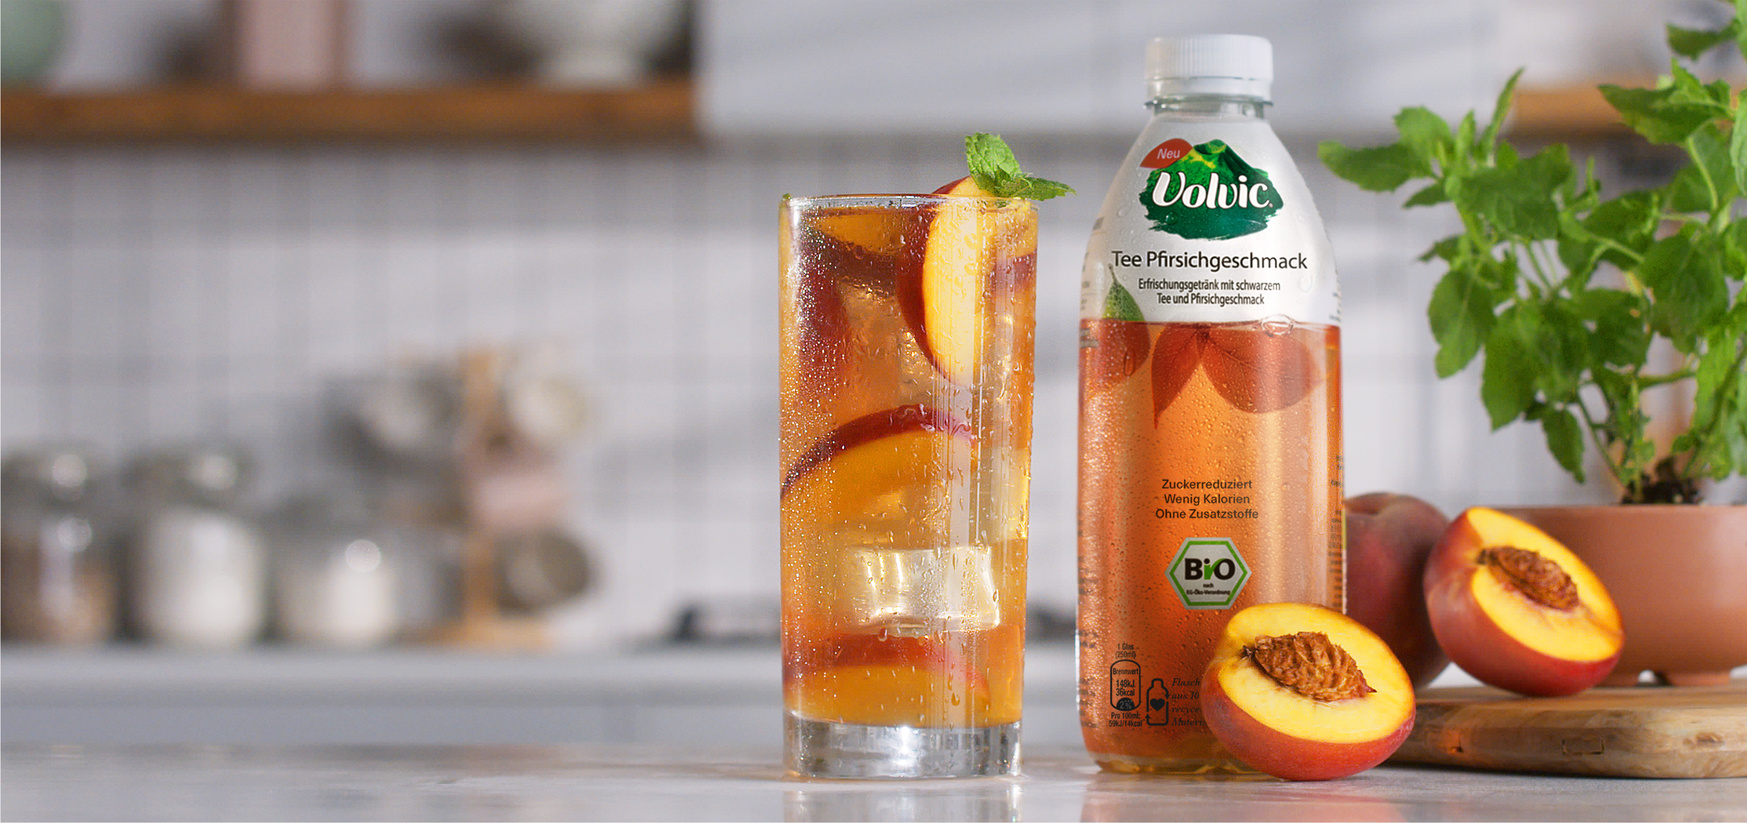 Für mehr Pfirsich im Leben: Peach Drink